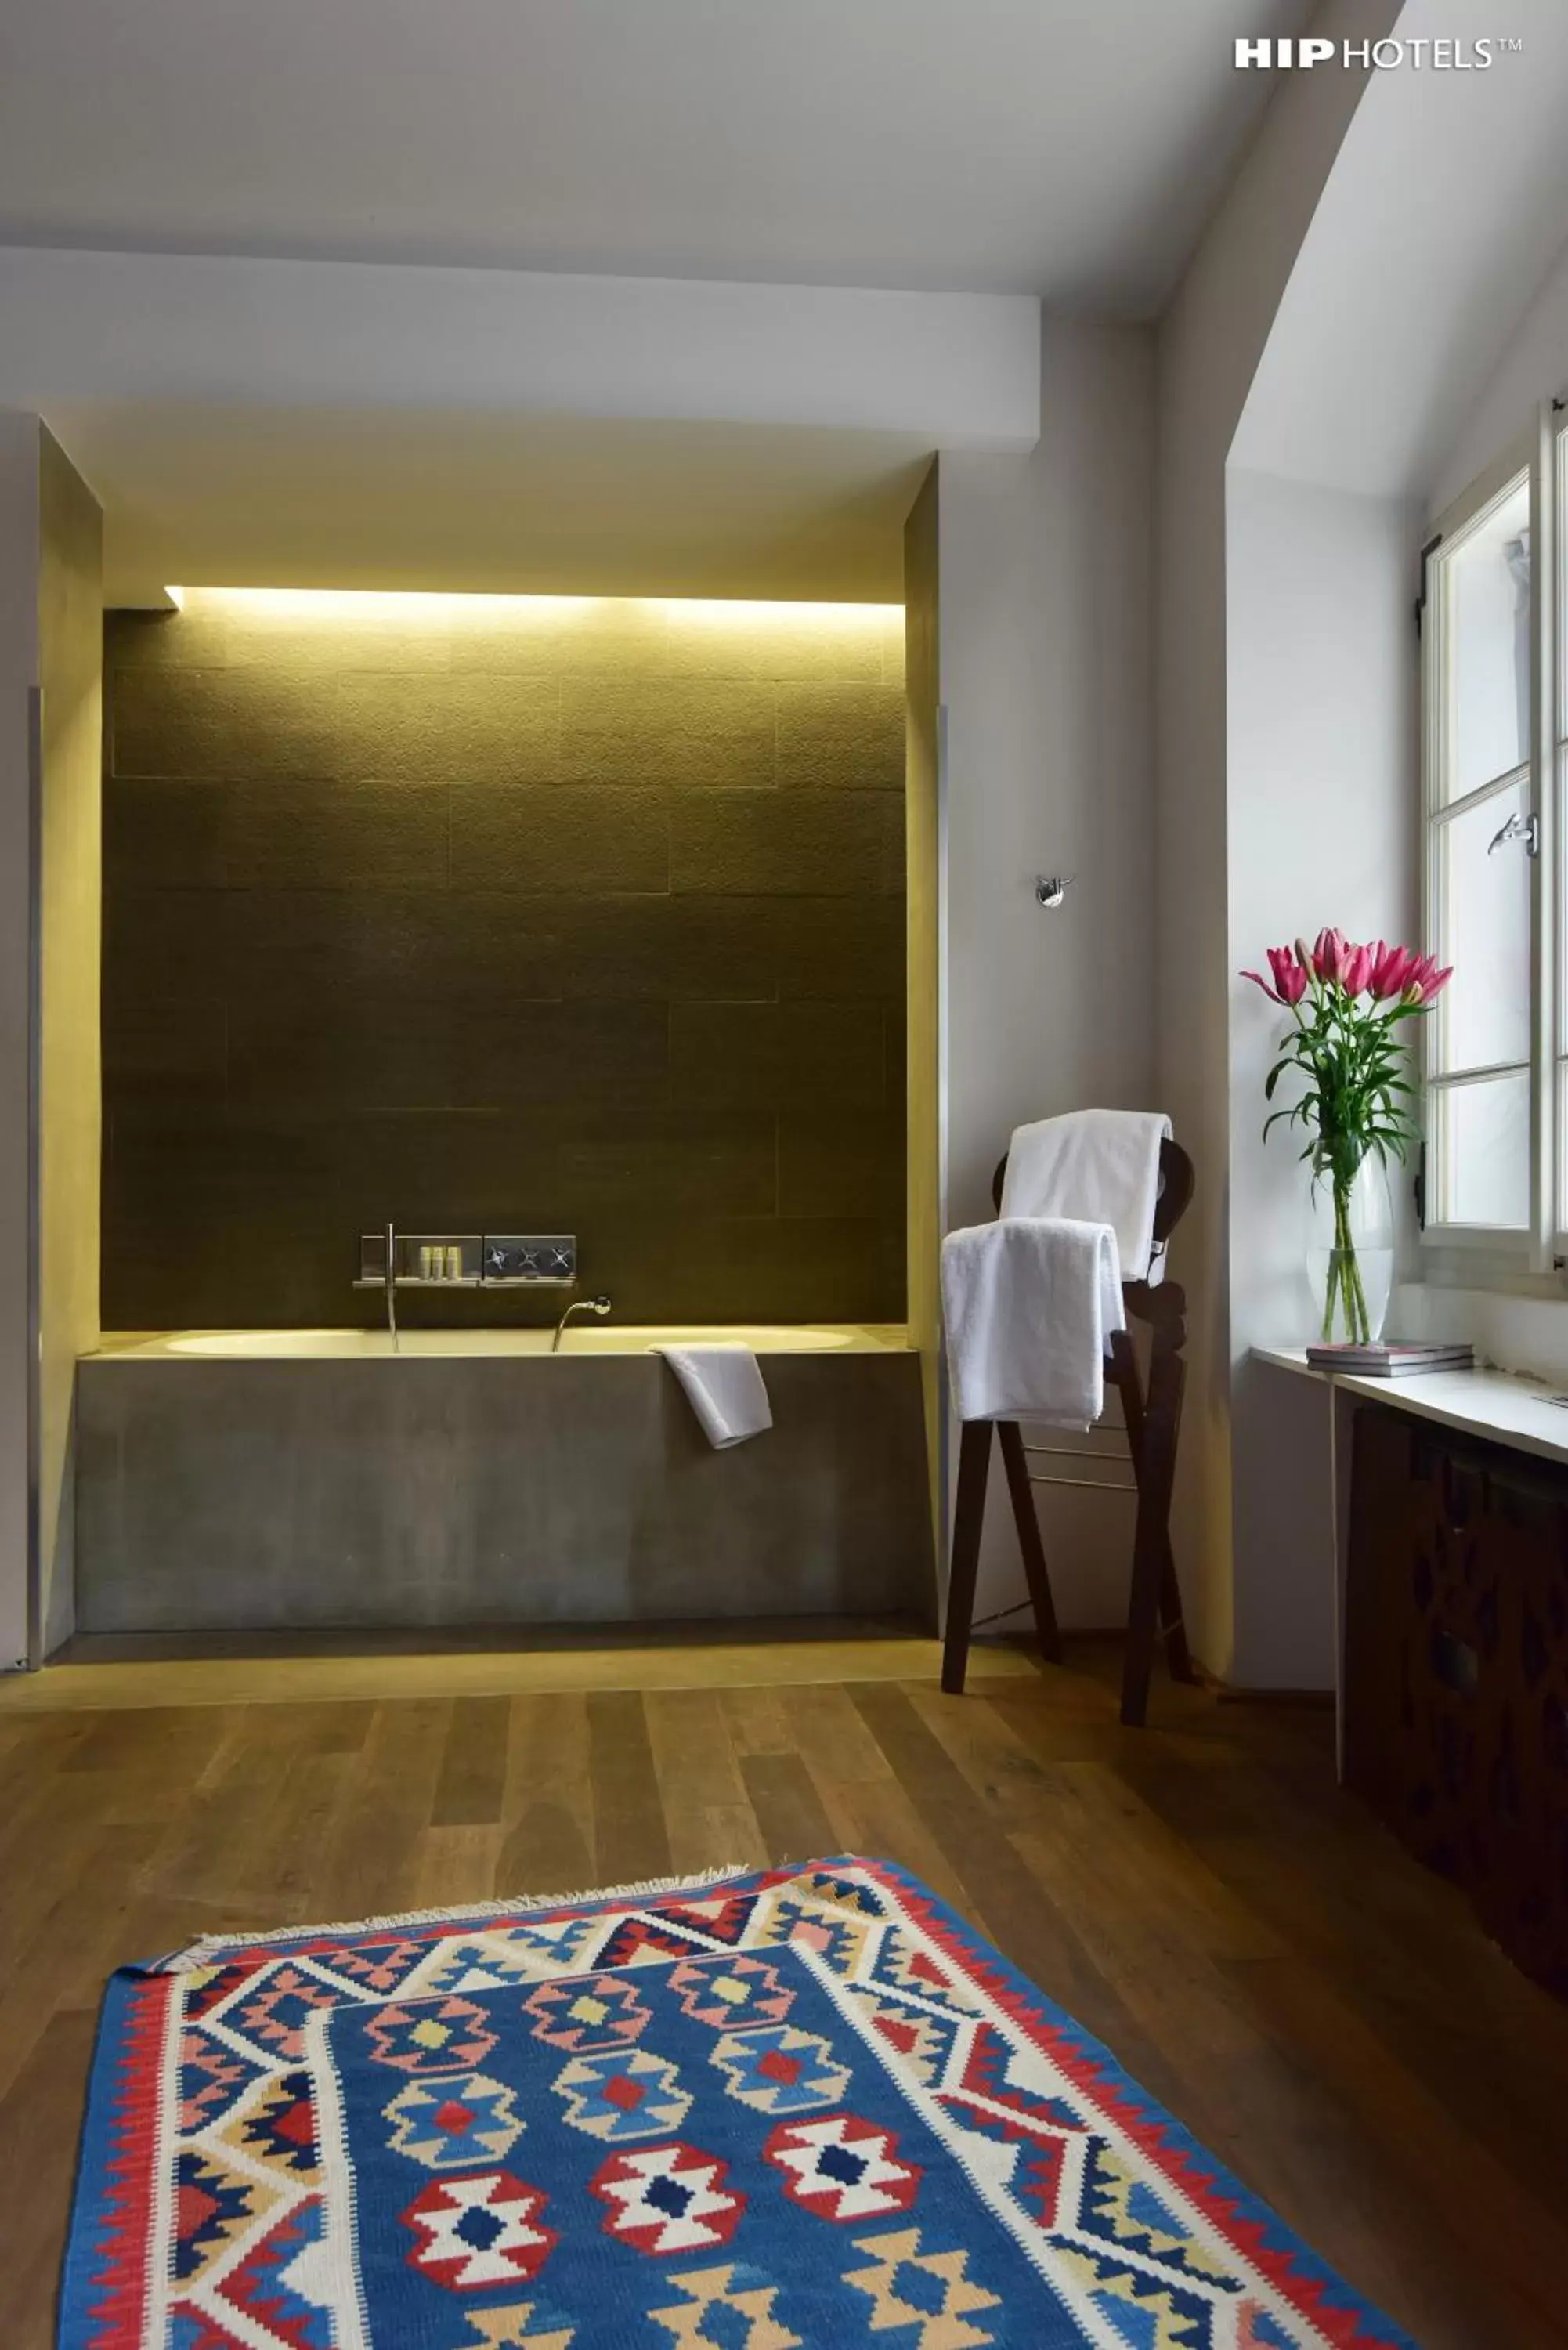 Bathroom, TV/Entertainment Center in Design Hotel Neruda